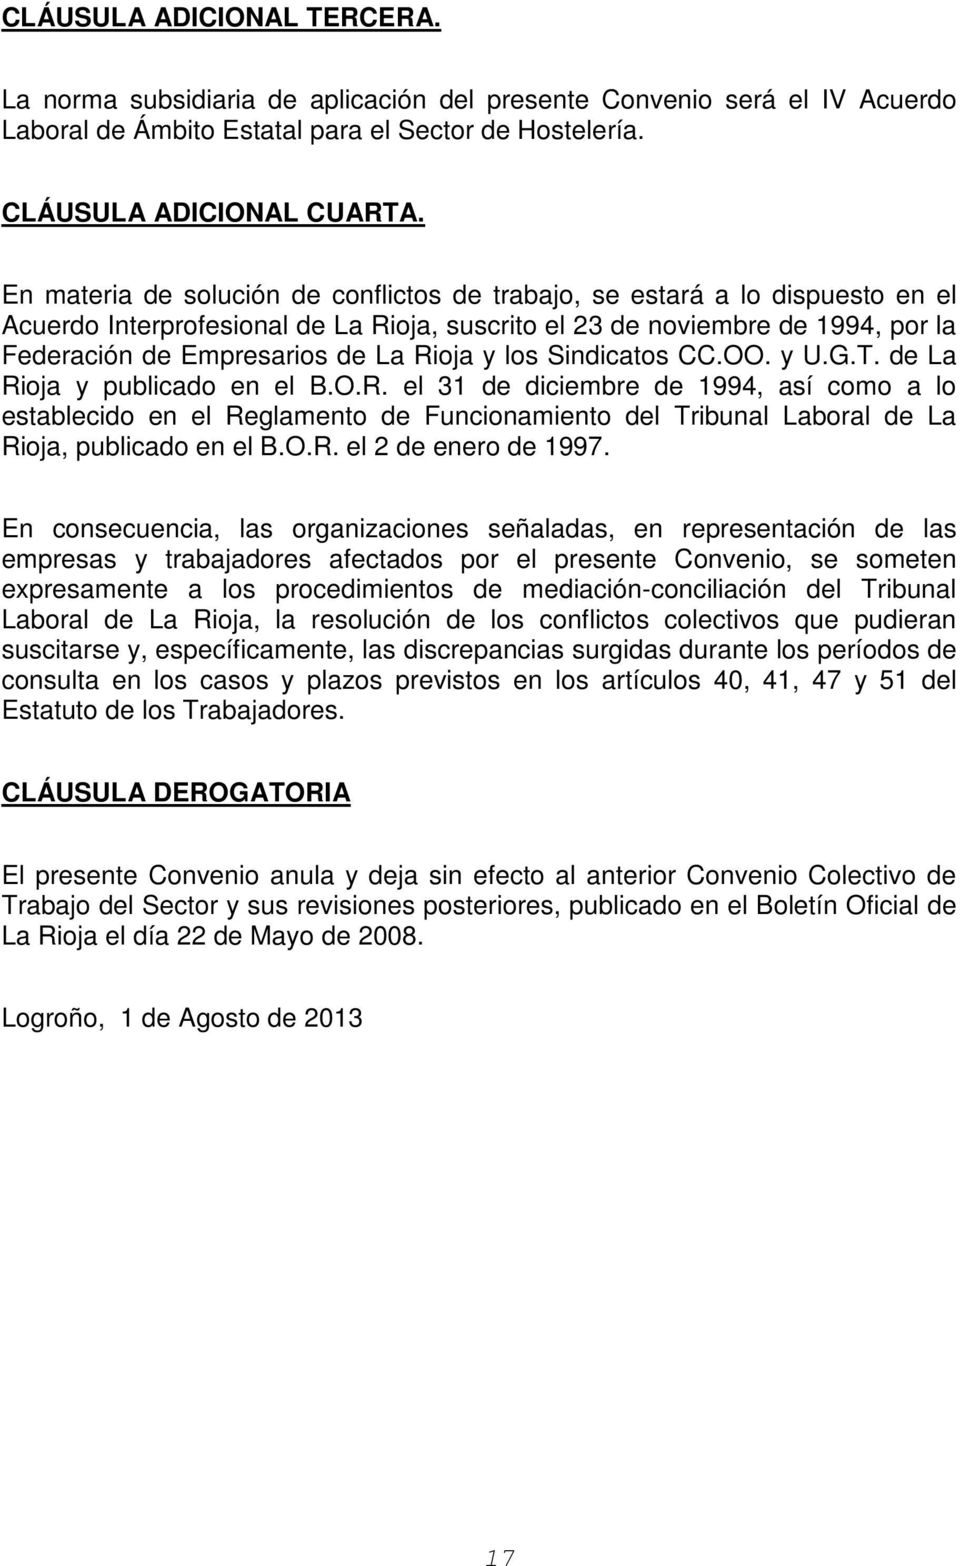 y los Sindicatos CC.OO. y U.G.T. de La Rioja y publicado en el B.O.R. el 31 de diciembre de 1994, así como a lo establecido en el Reglamento de Funcionamiento del Tribunal Laboral de La Rioja, publicado en el B.